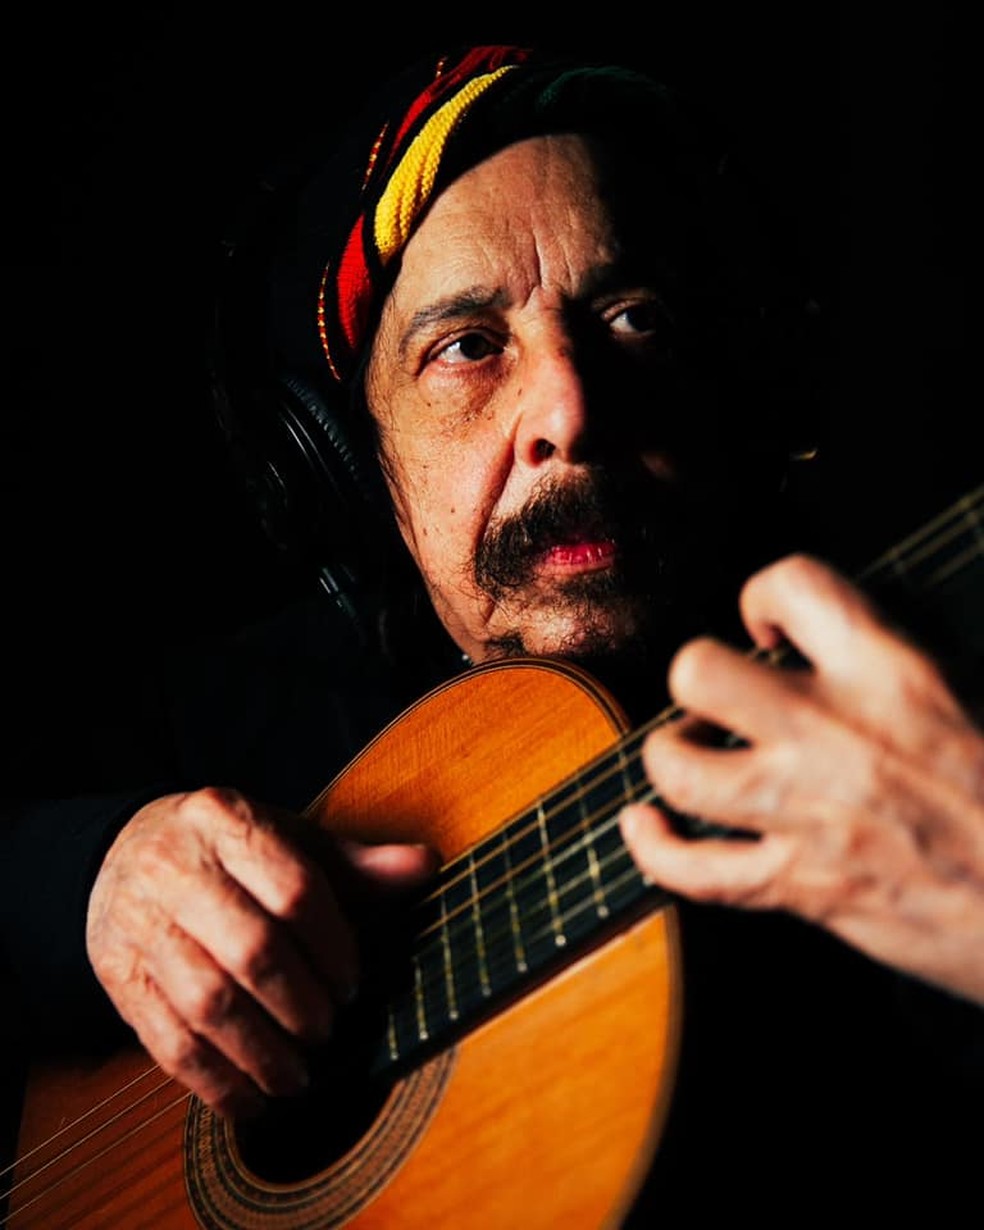 Benito Di Paula toca violão no álbum 'O infalível zen', disco assinado com o filho Rodrigo Vellozo — Foto: Murilo Alvesso / Divulgação